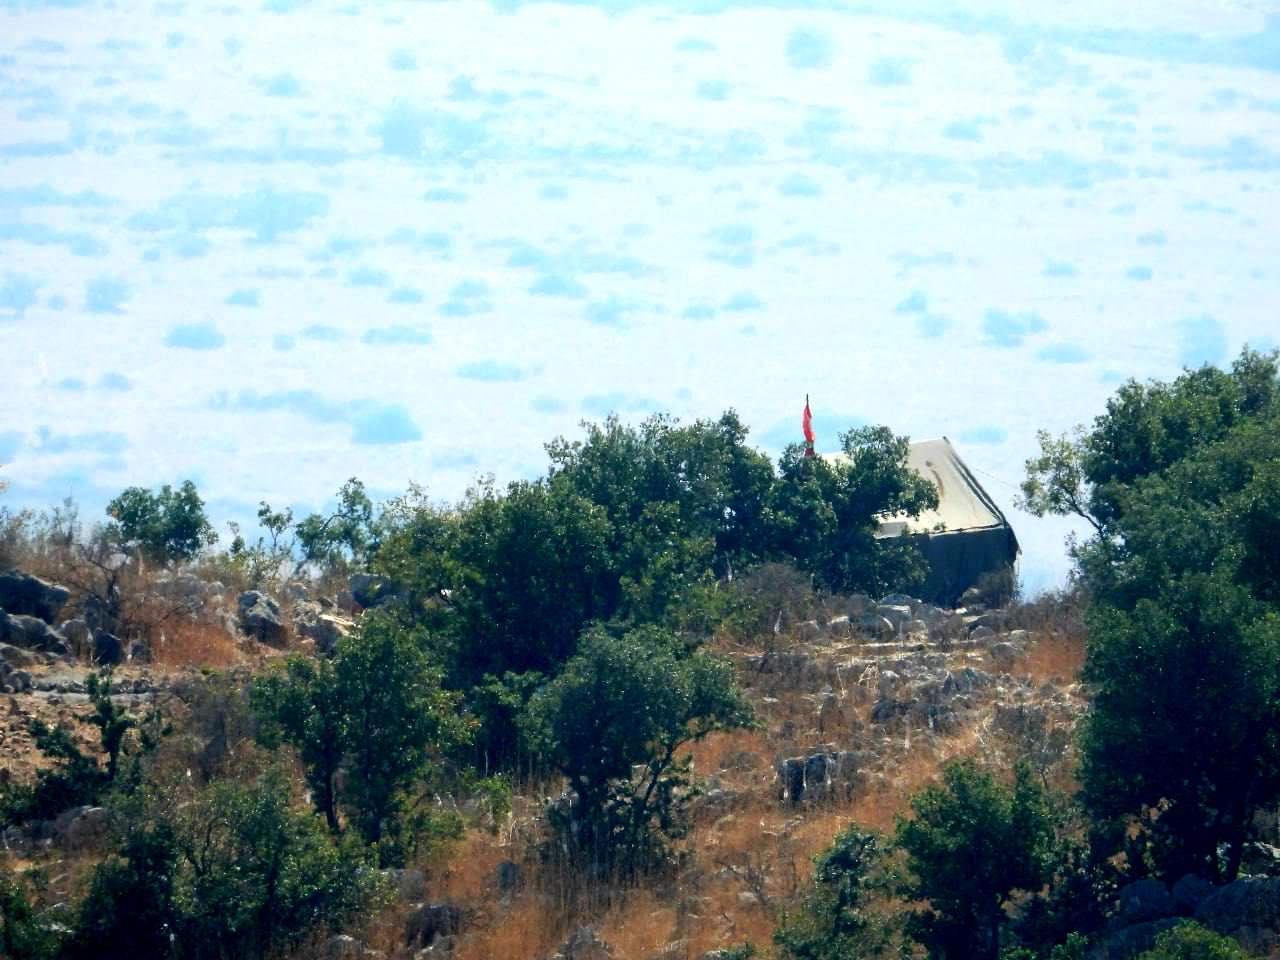 بالصورة - الخيمة التي اعاد حزب الله نصبها مجدداً بعد استهدافها من قوات الاحتلال في مزارع شبعا 